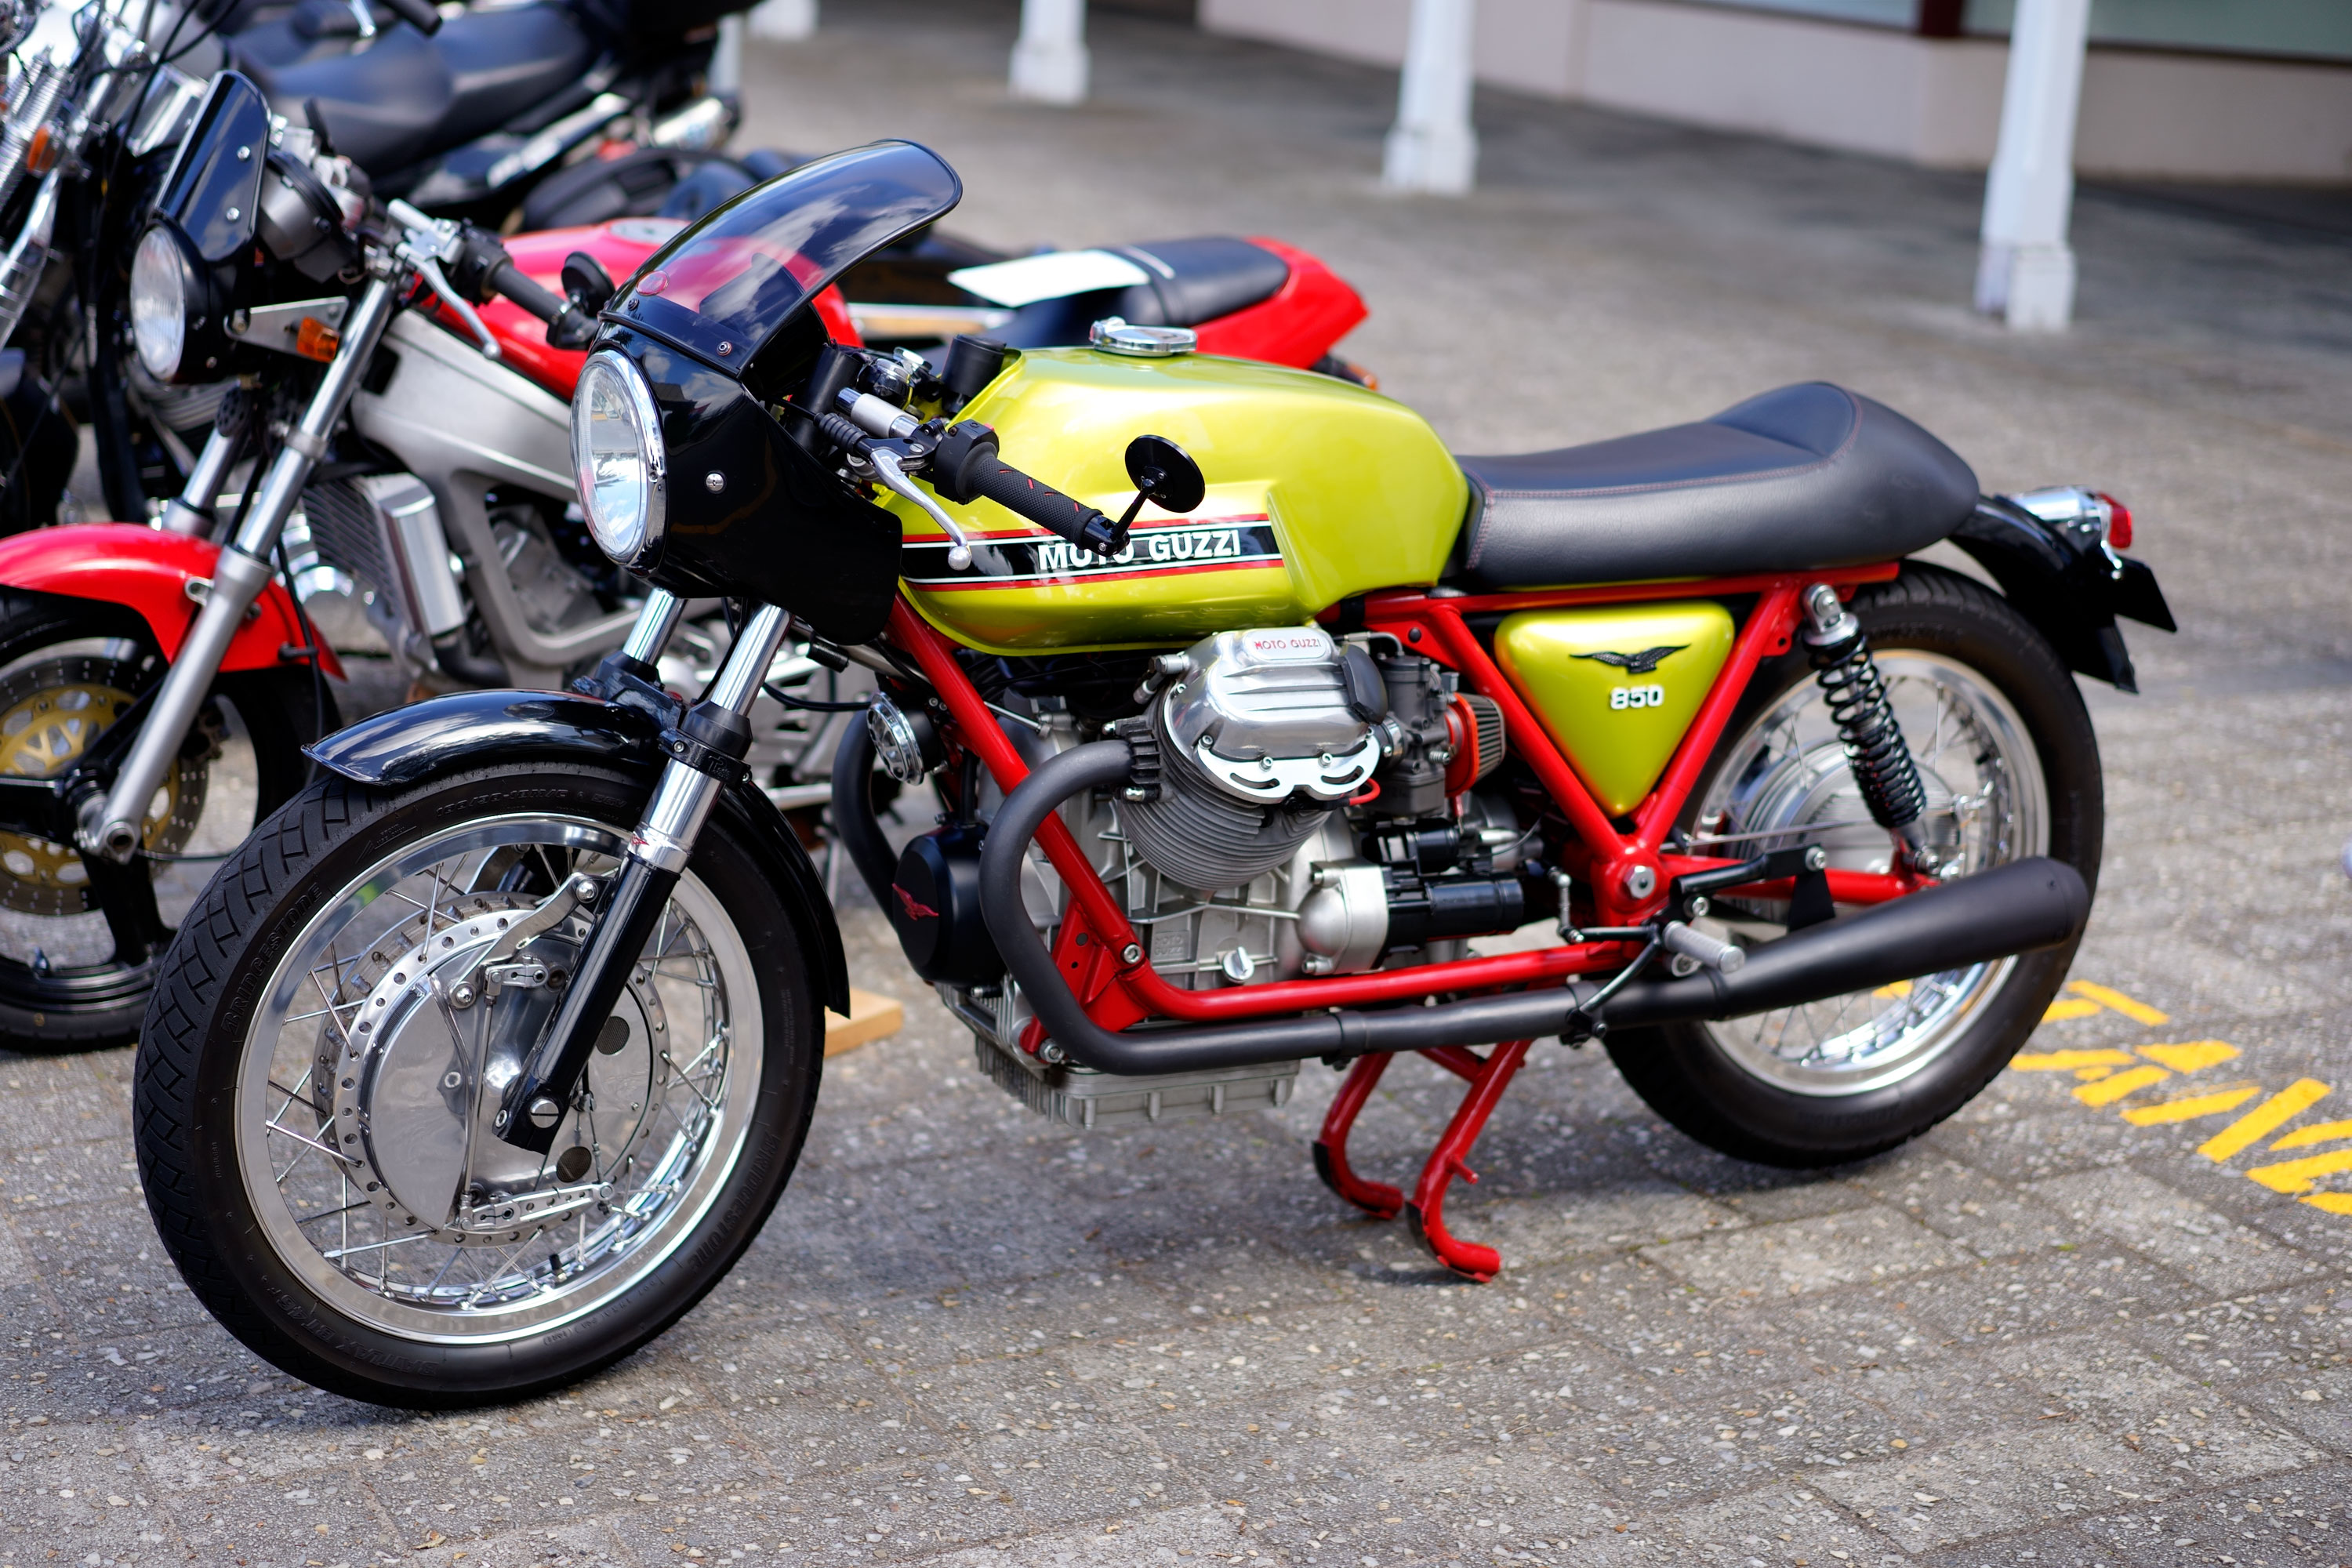 Moto Guzzi 850 in Italian colours.